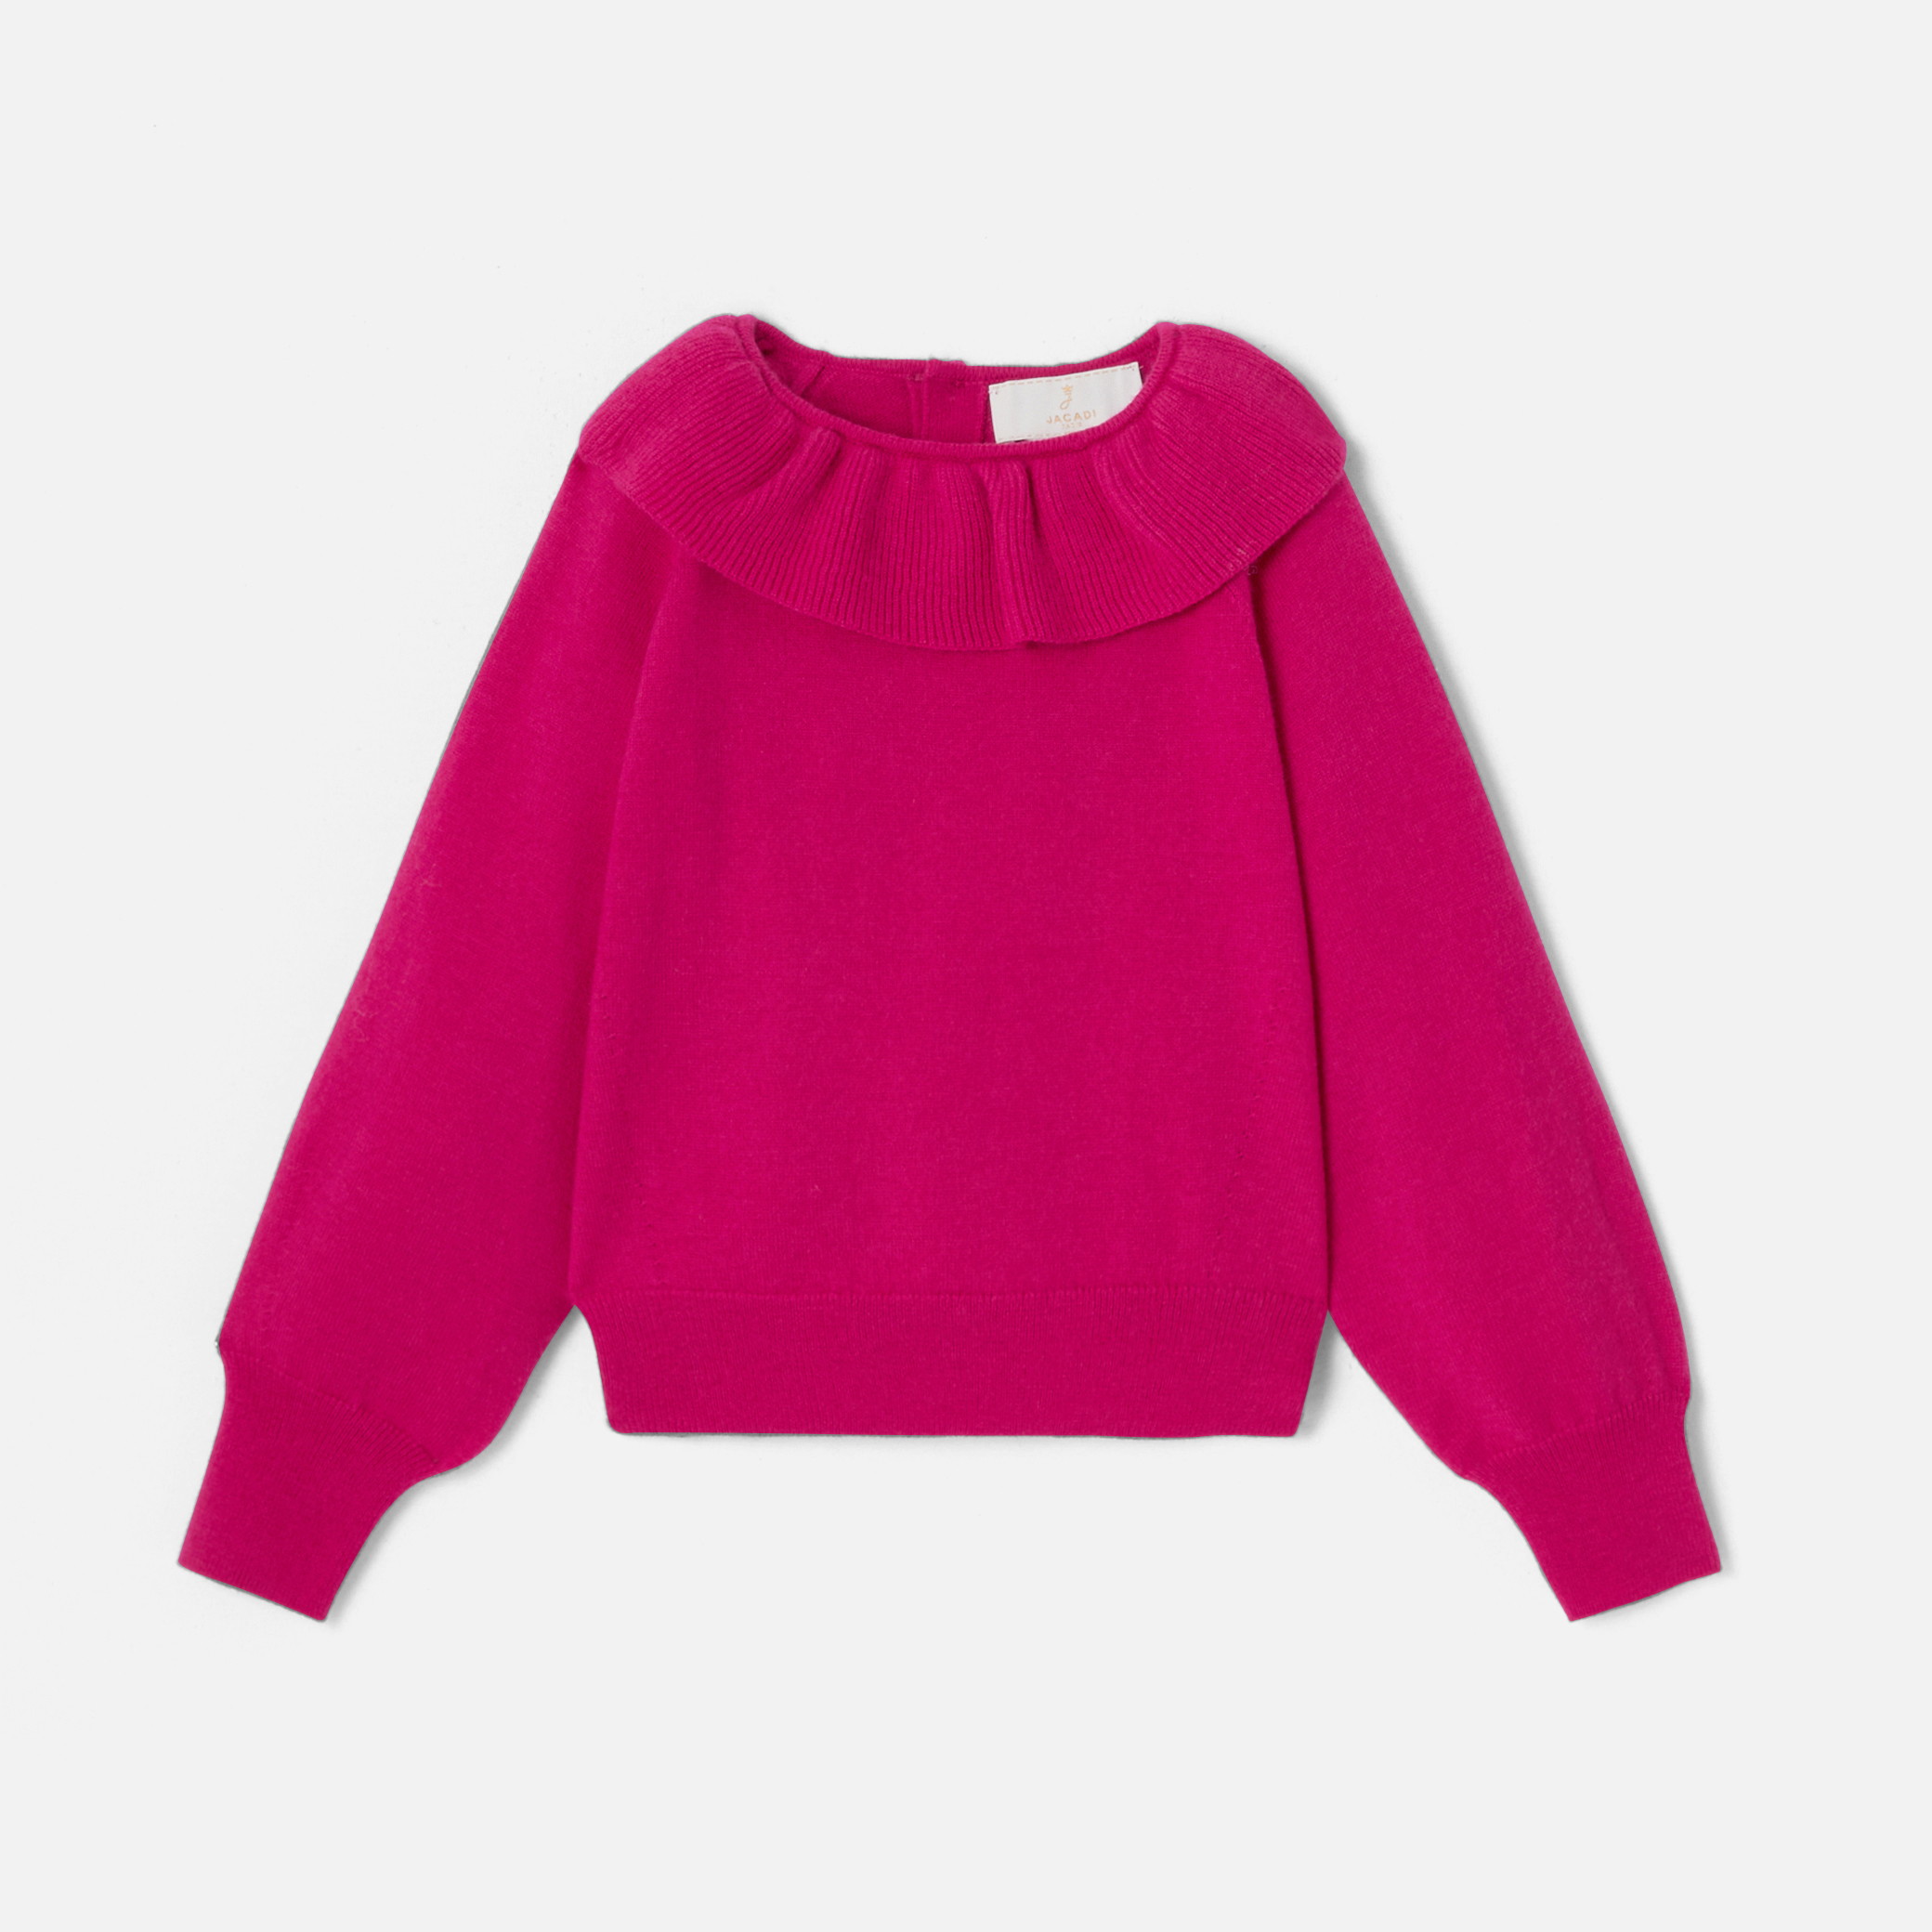 Girl sweater